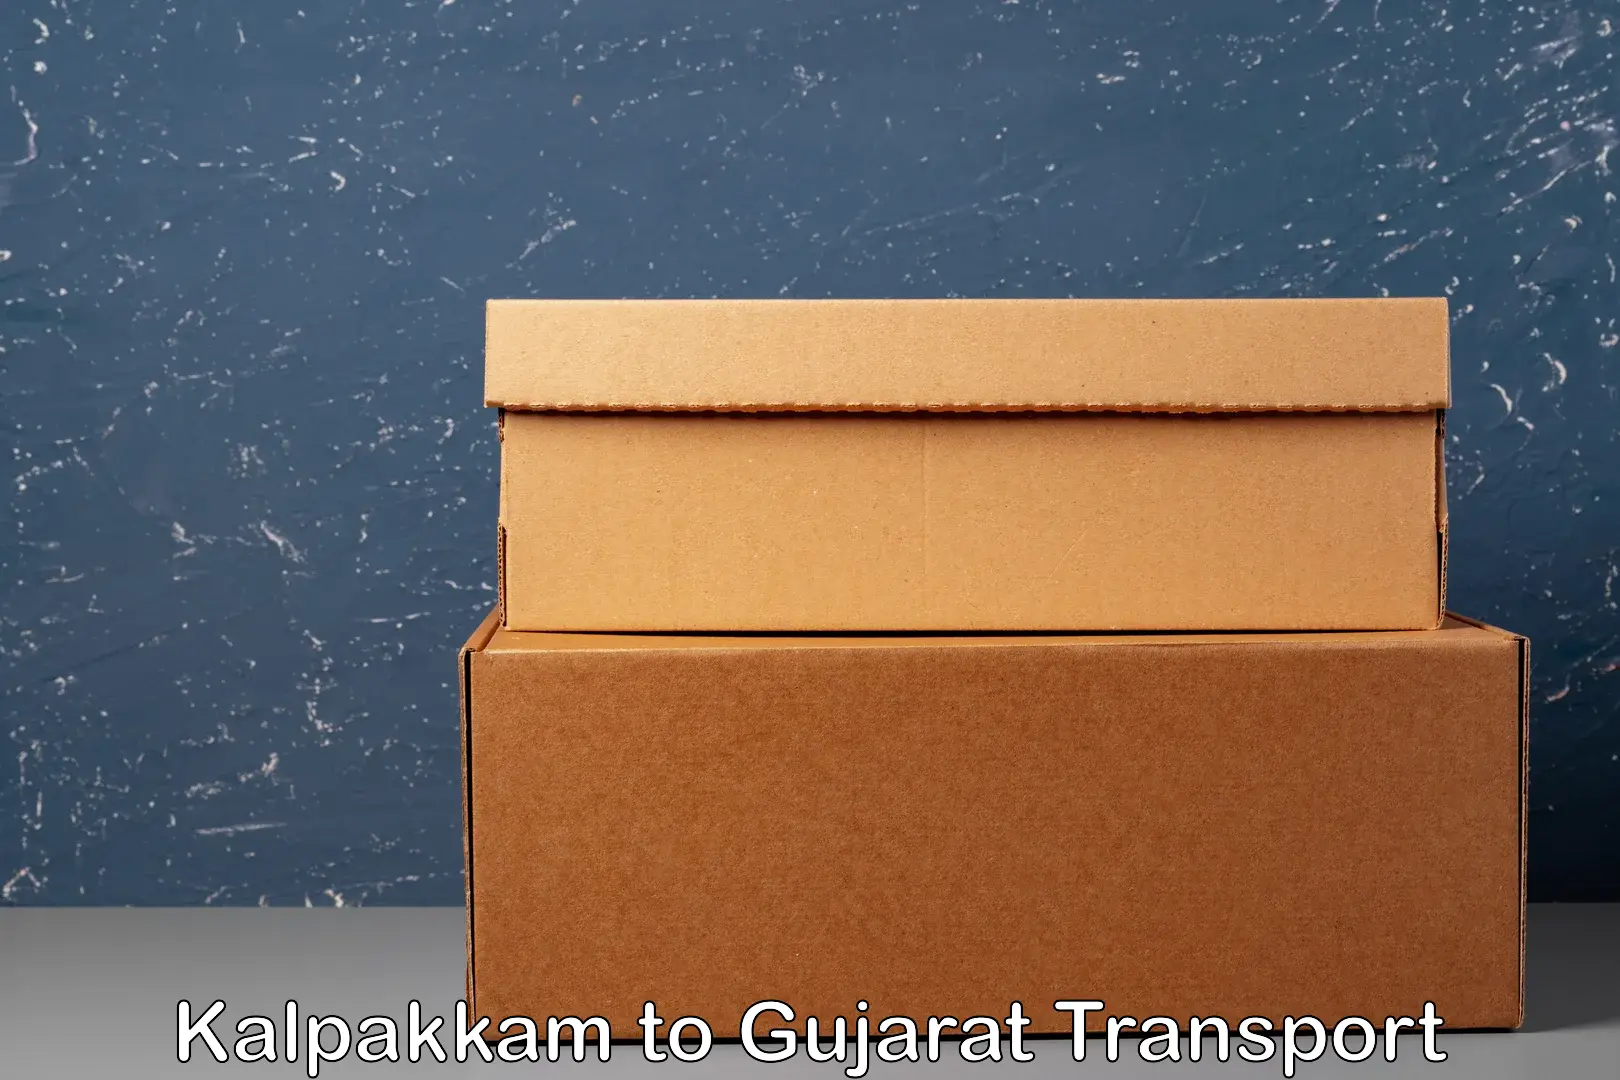 Pick up transport service Kalpakkam to Godhra